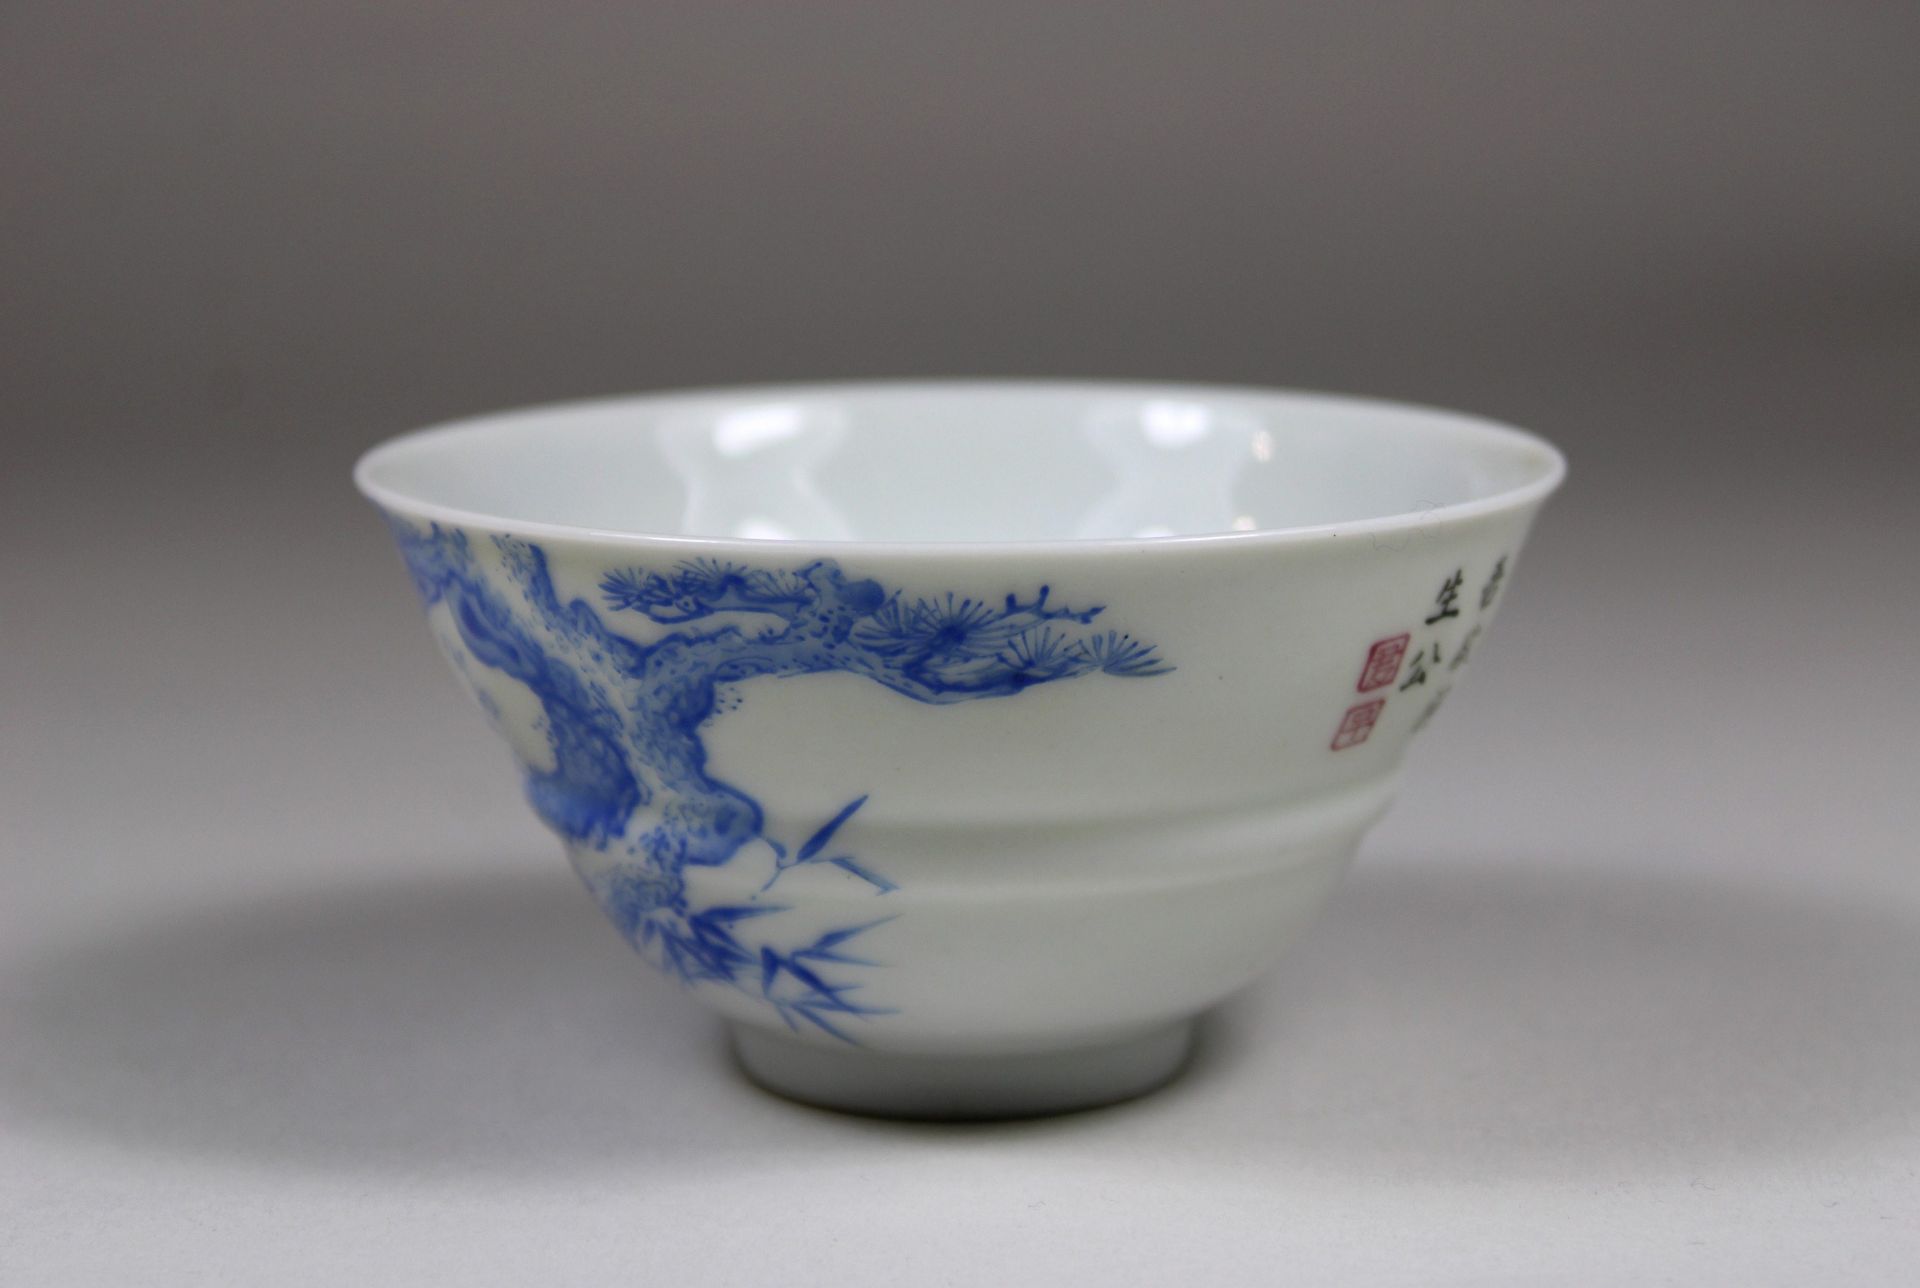 Chinesischer Cup, florale Dekoration, Blau -Weiß, Oberglasseur, feines Porzellan, Dm 9 cm, guter